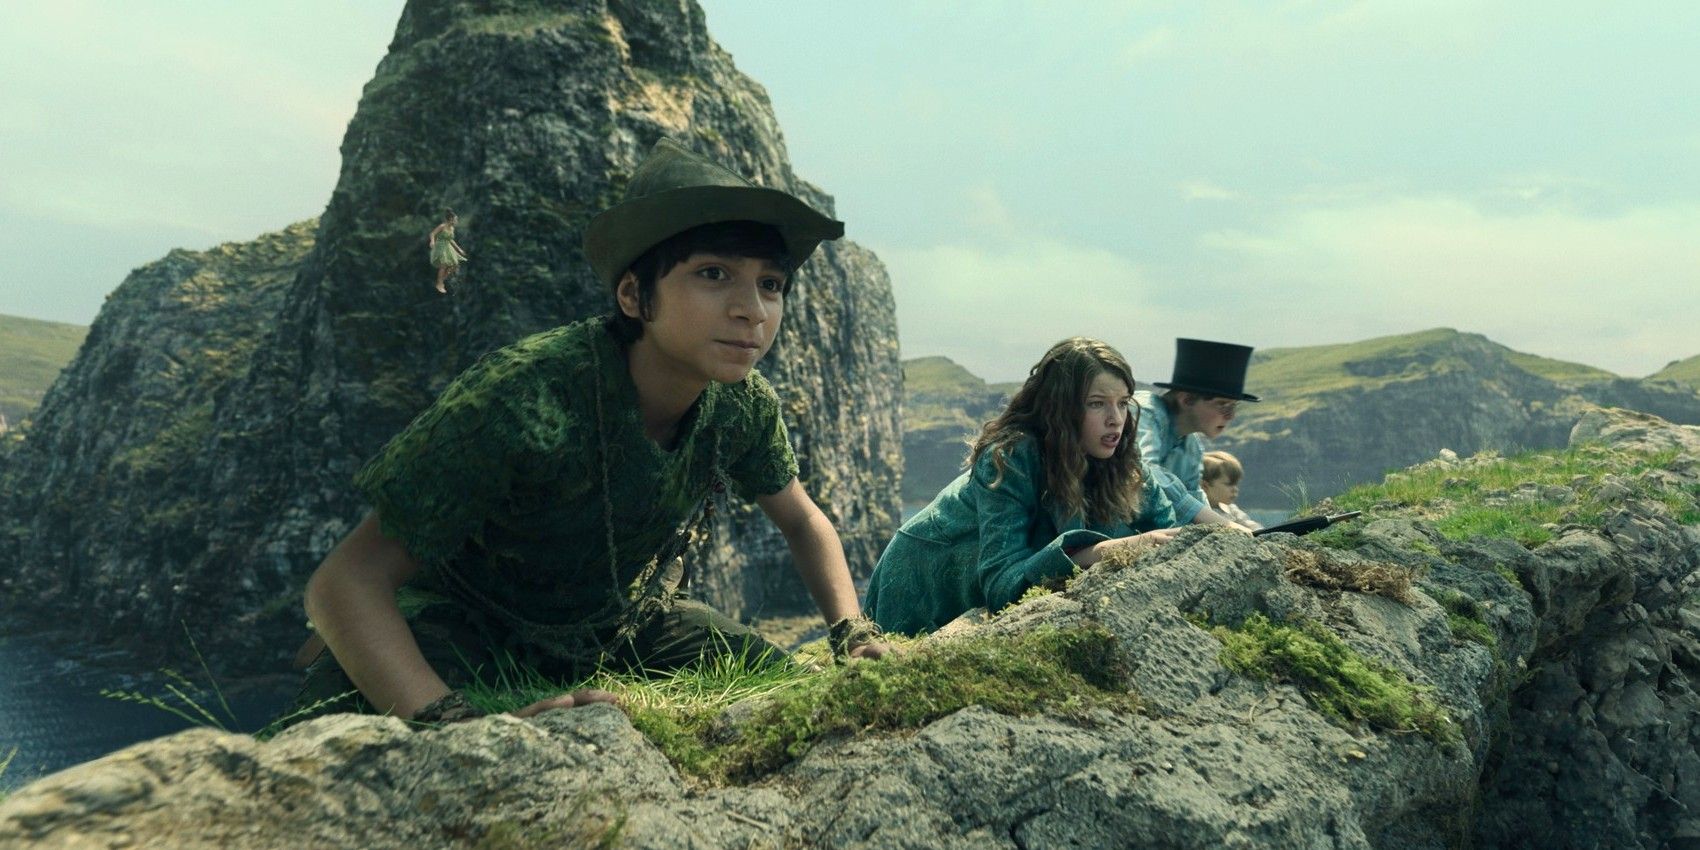 Reseña de Peter Pan y Wendy: Neverland pierde su magia en un remake bien fundamentado